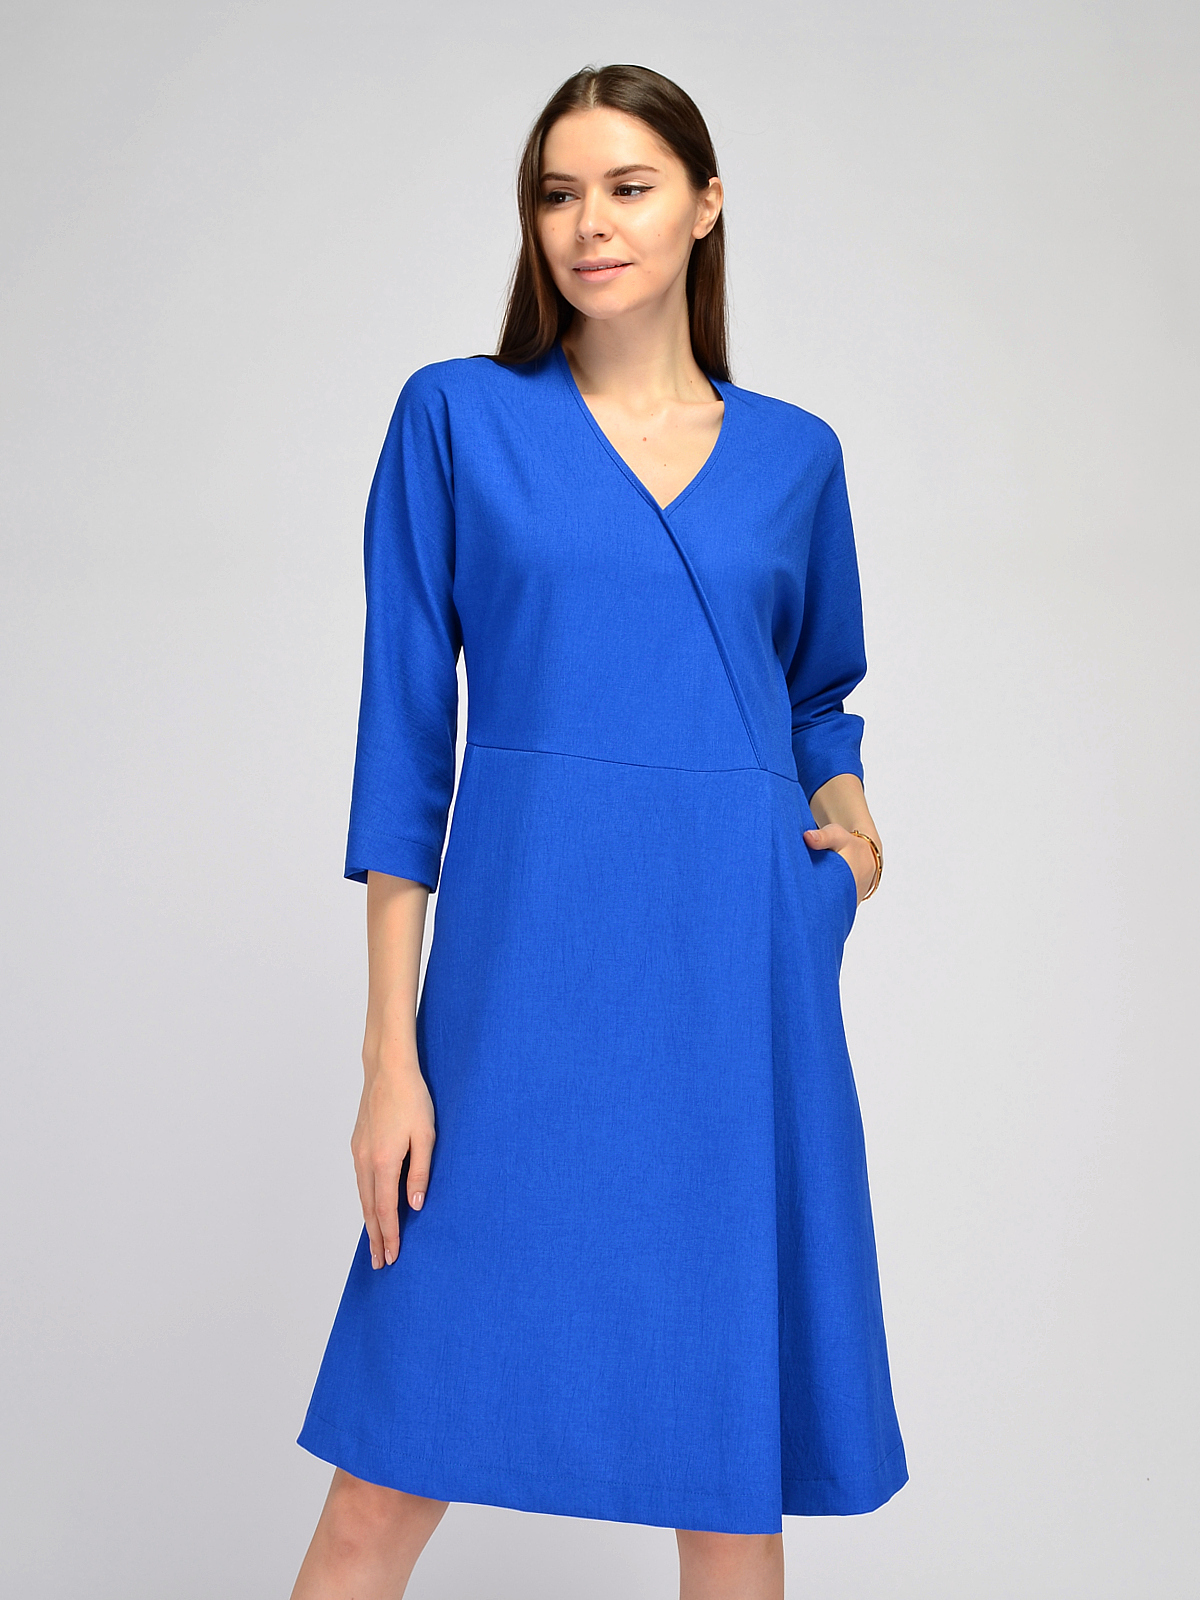 Платье женское Каляев 71484 голубое 46 RU